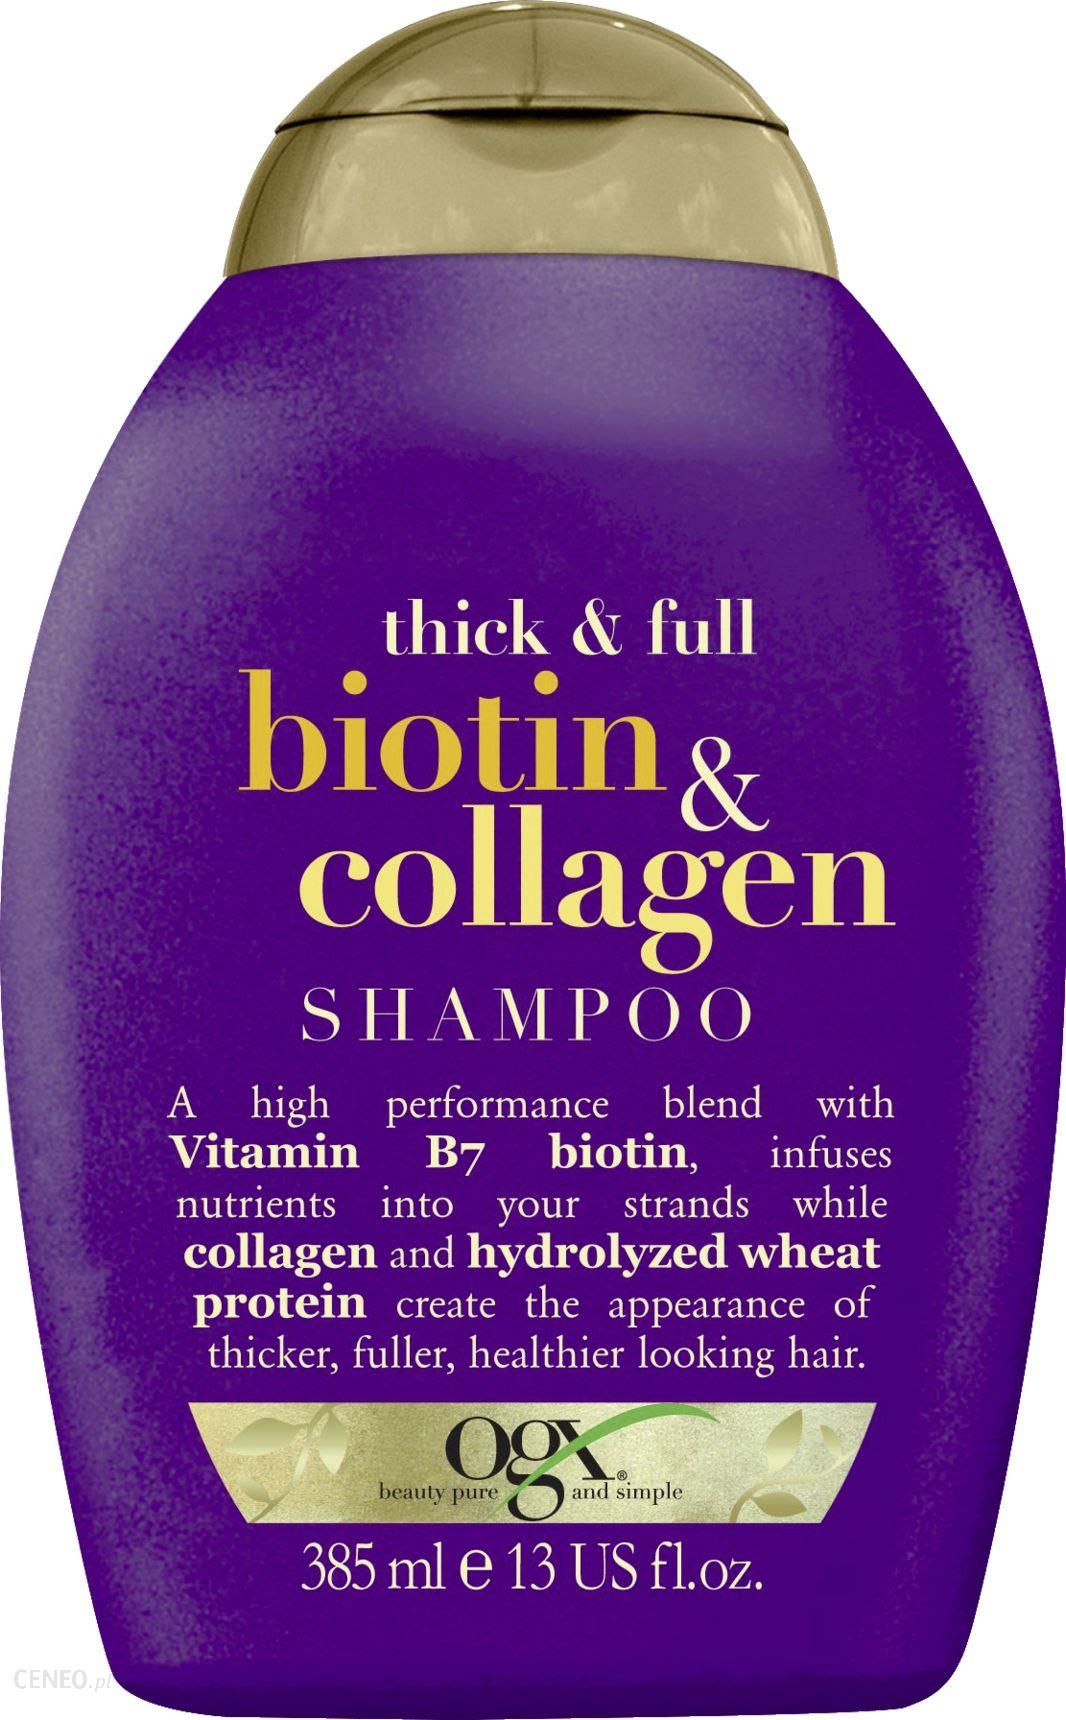 organix biotin & collagen odżywka do włosów biotyna i kolagen